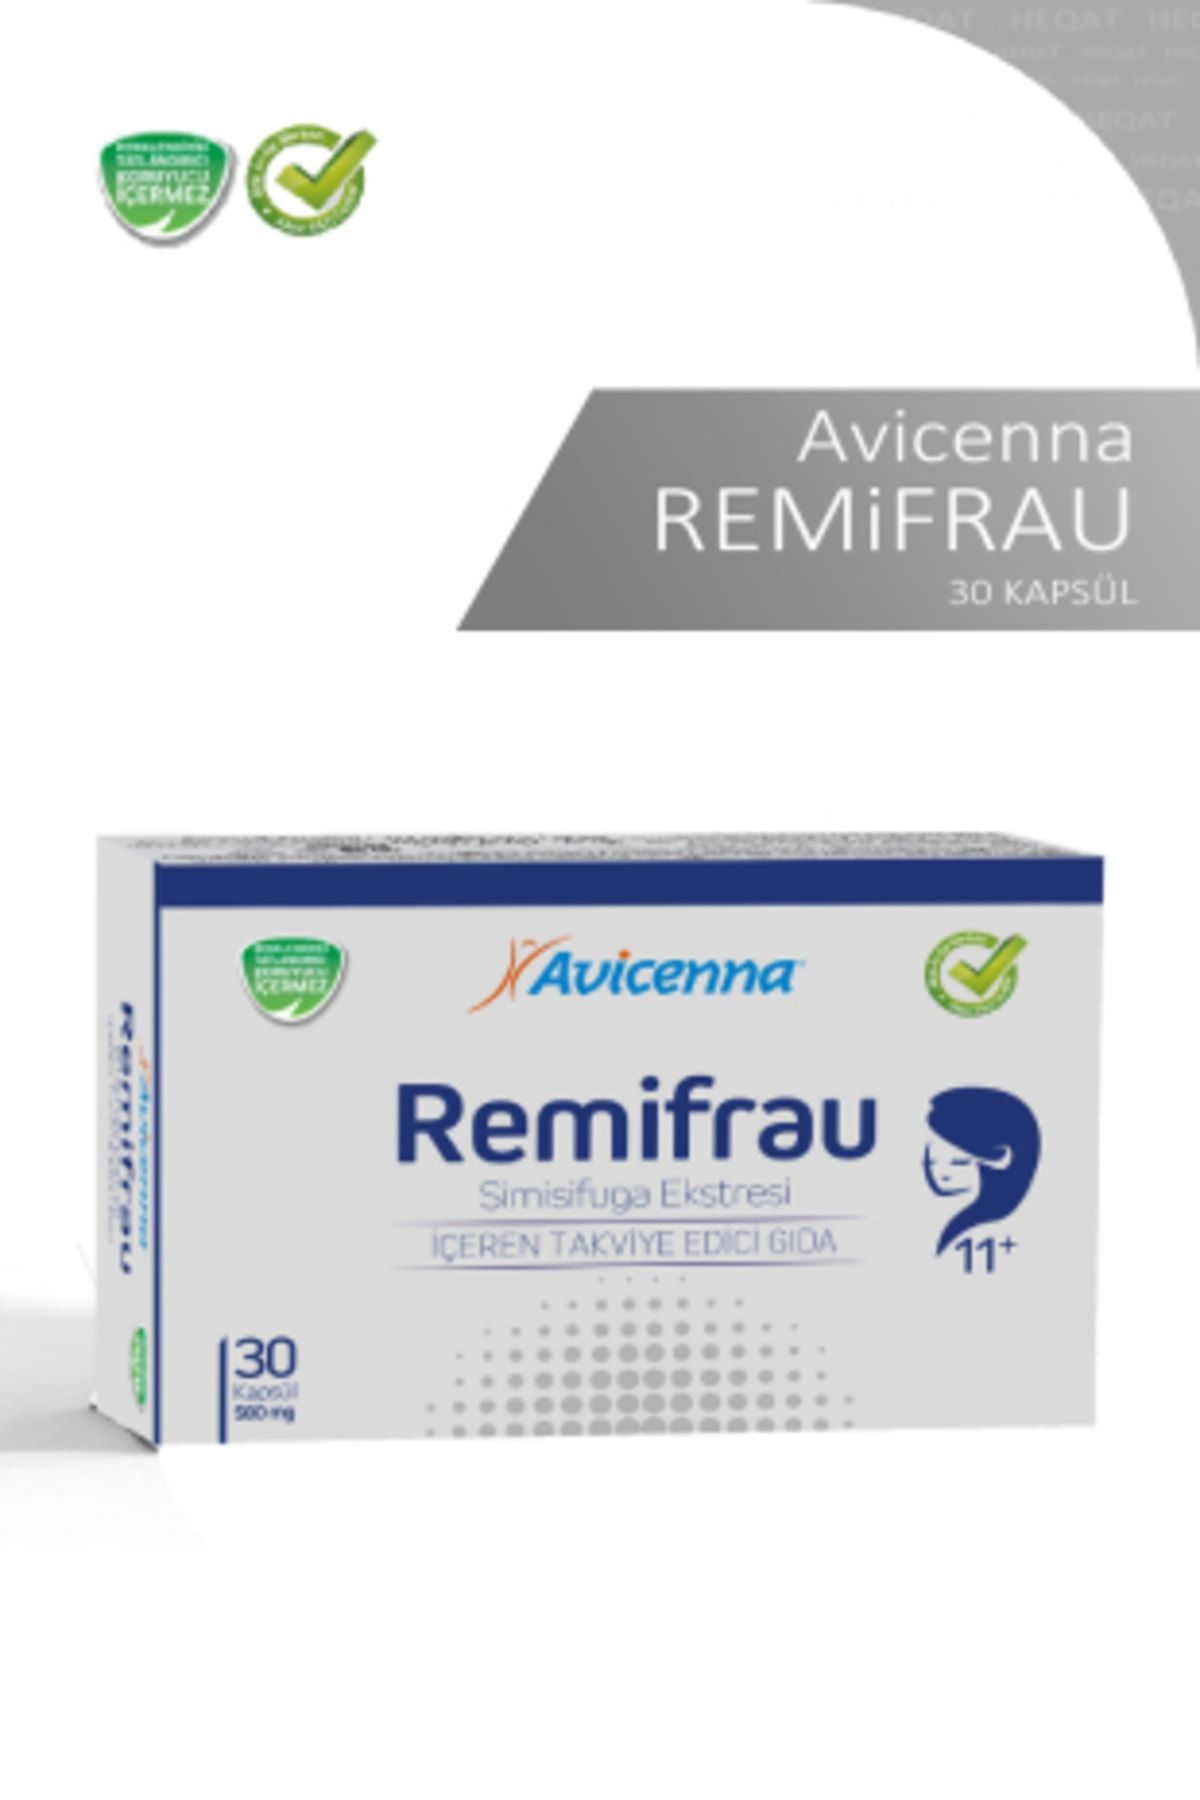 Avicenna Remifrau - Simisifuga Ekstresi İçeren Takviye Edici Gida - 30 Kapsül - 8690088010224